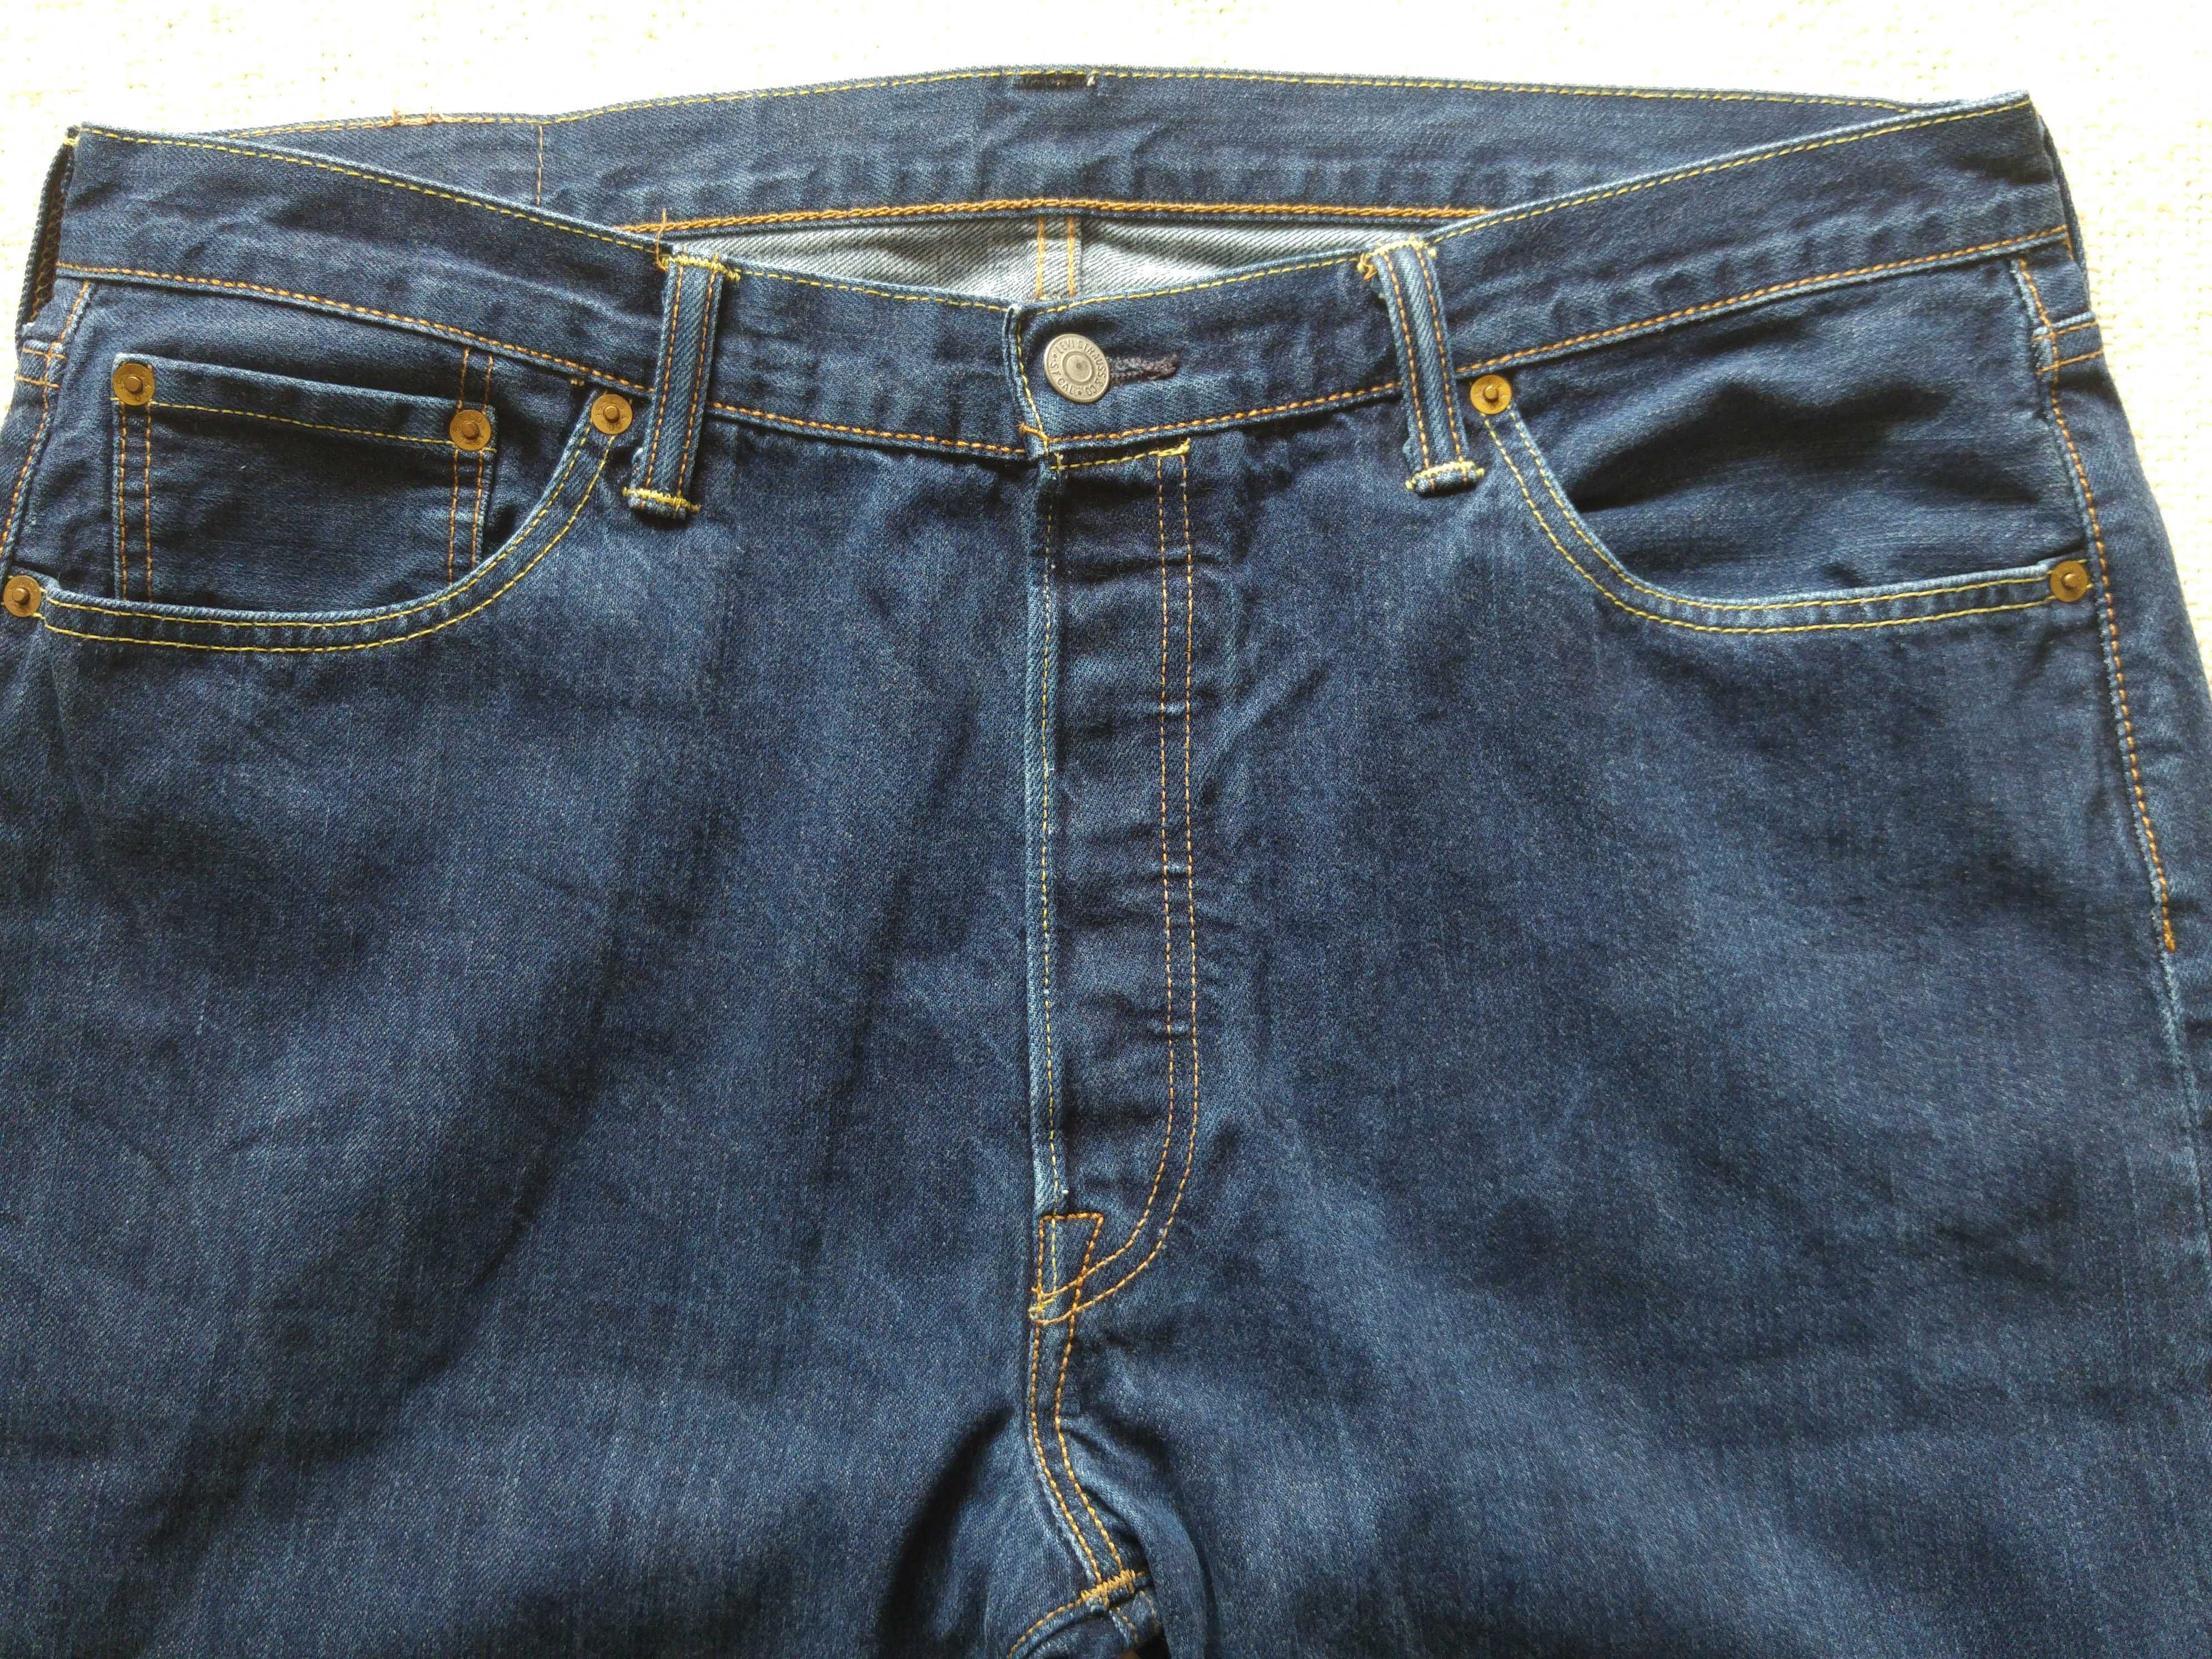 Spodnie męskie jeans Levis